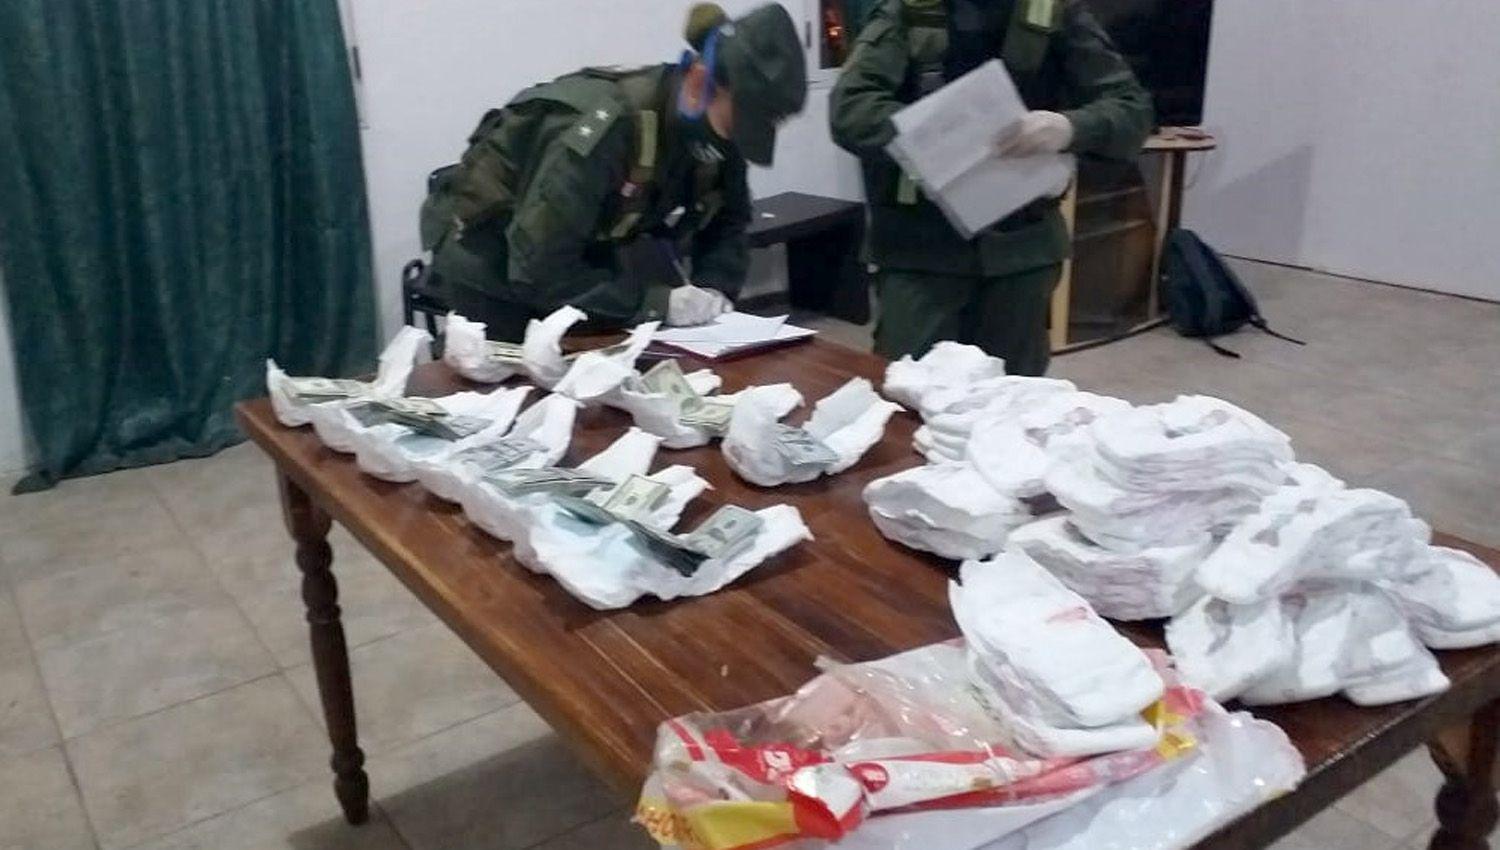 Viajaban con maacutes de 35000 doacutelares escondidos en pantildeales y fueron detenidos en Pinto